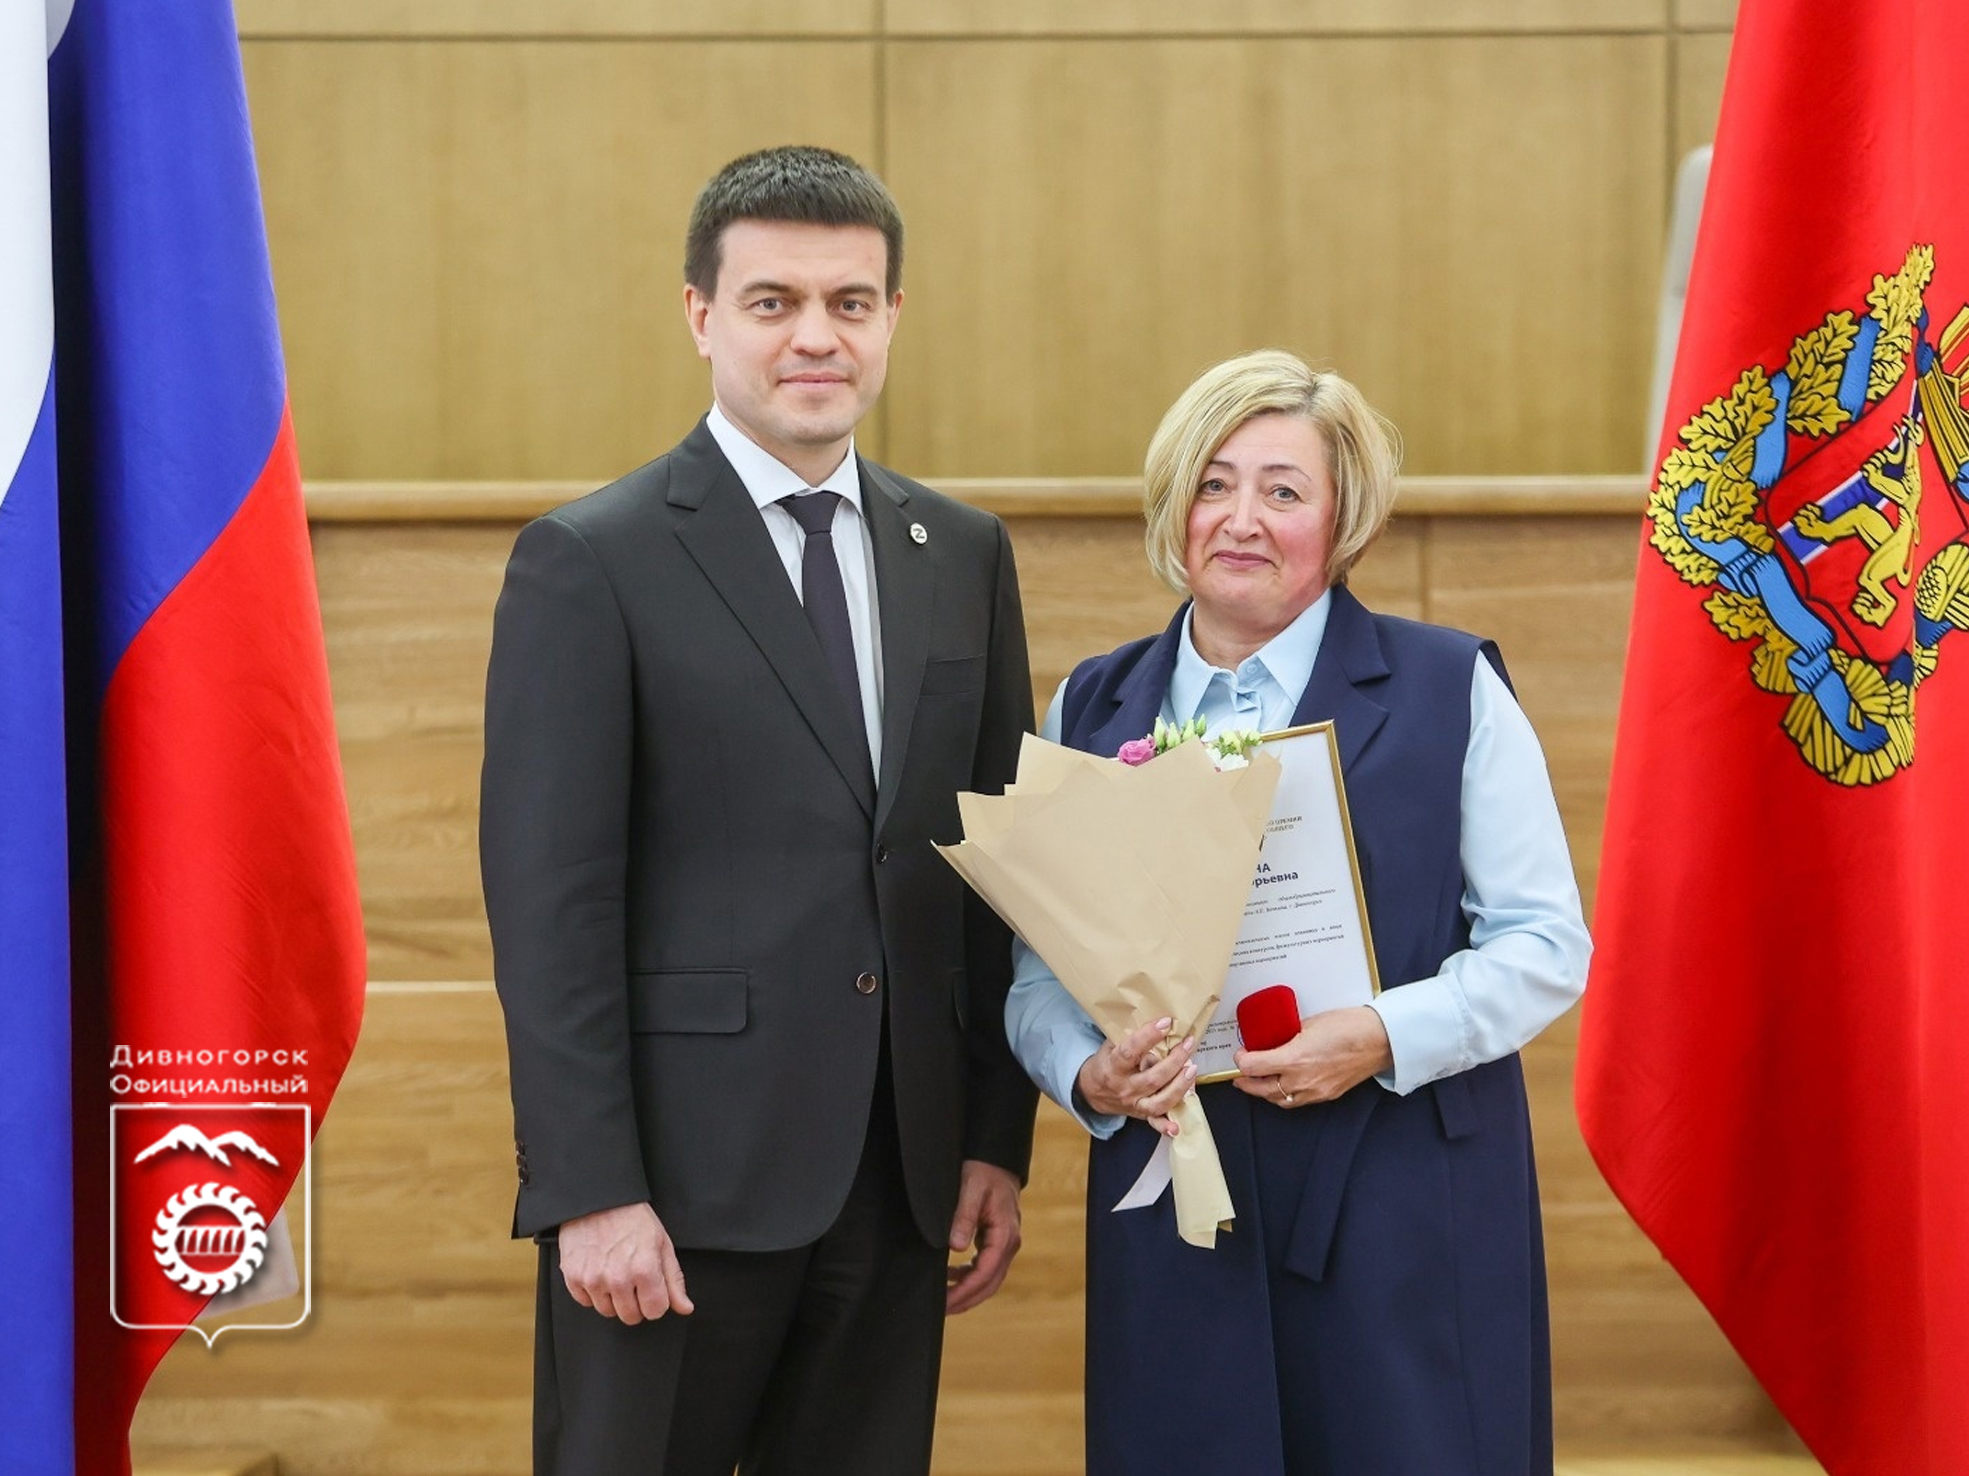 Глава города Сергей Егоров поздравил дивногорских педагогов с наградой.